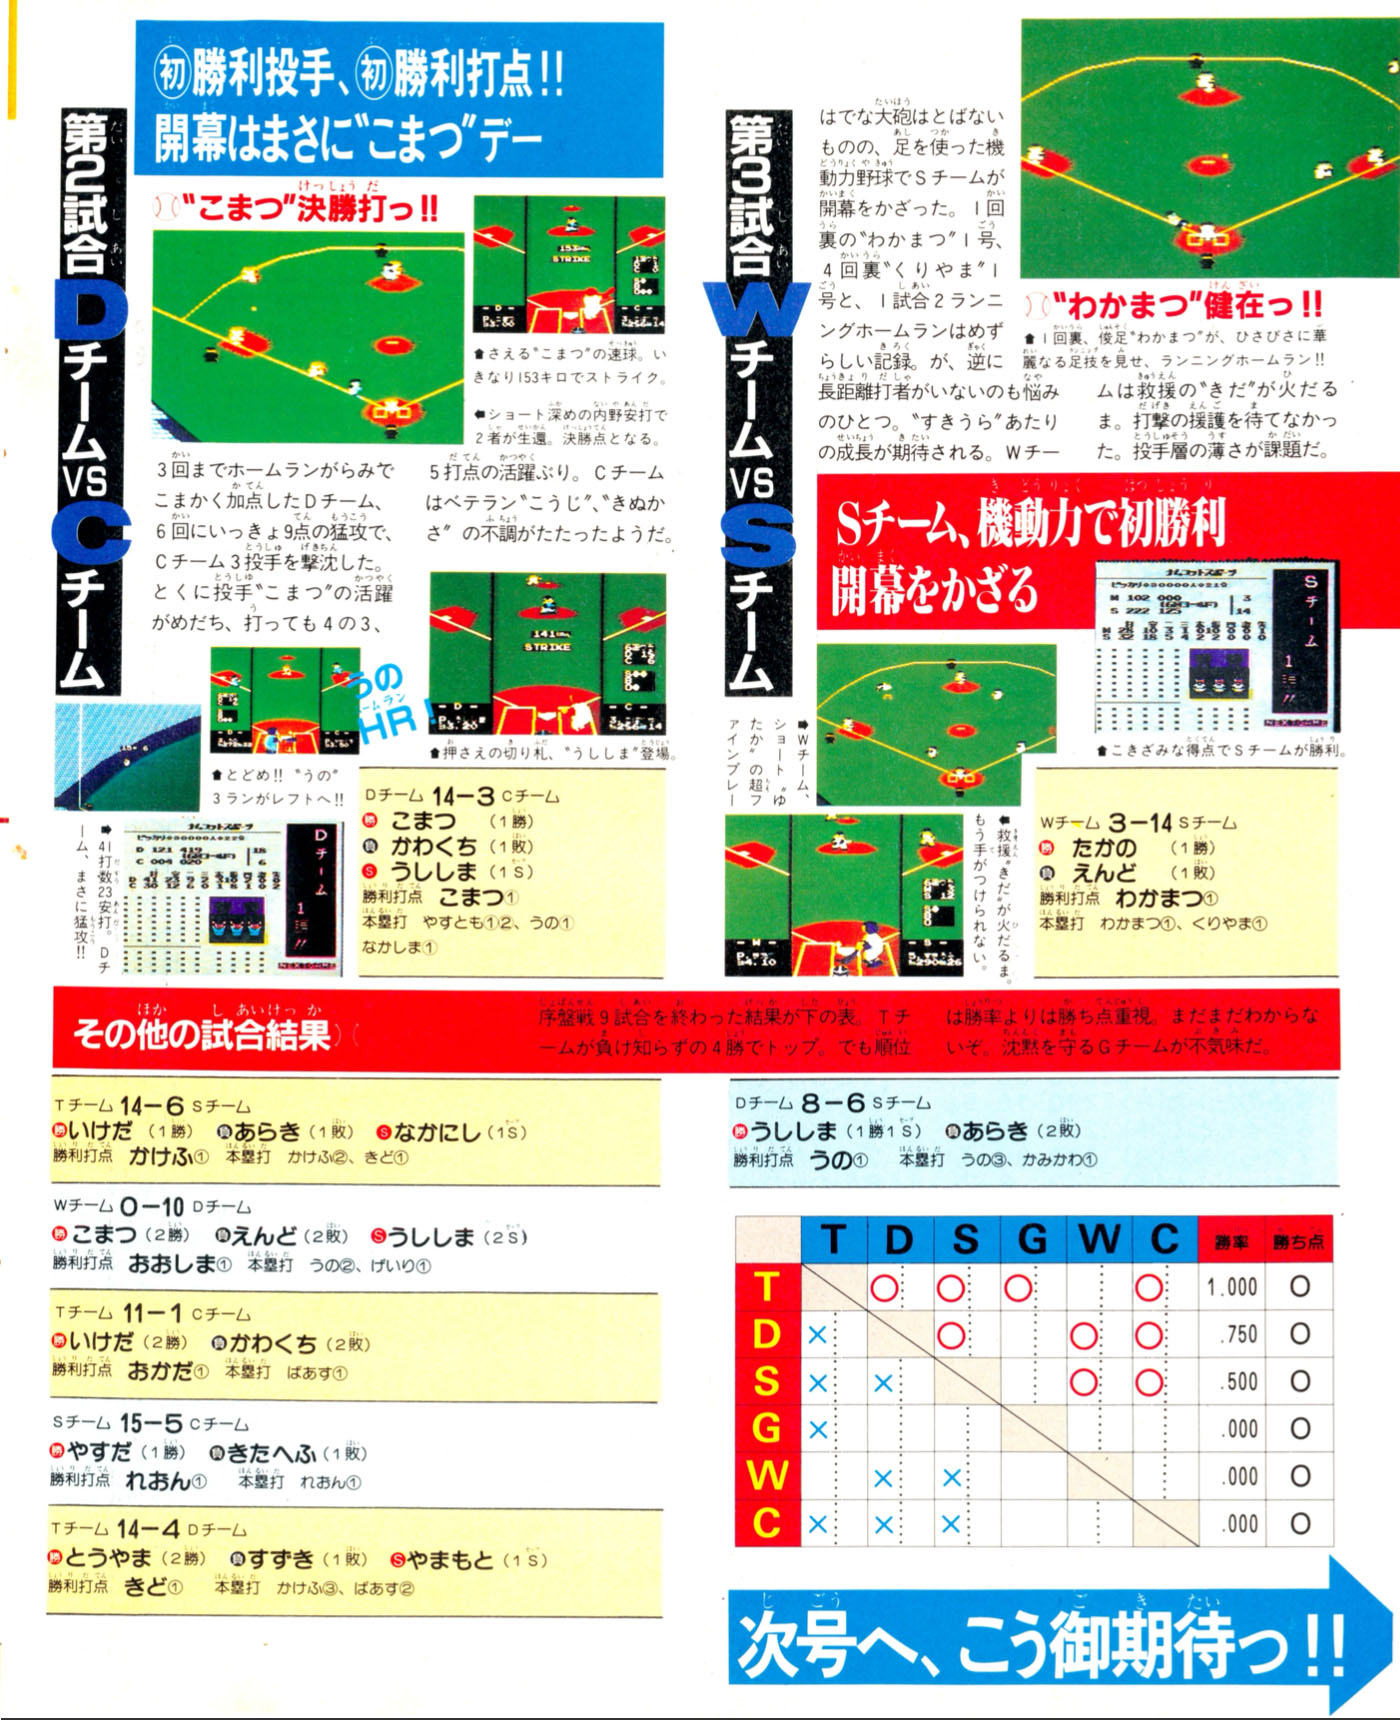 Pro Yakyuu: Family Stadium, Famitsu December 12, 1986 page 23